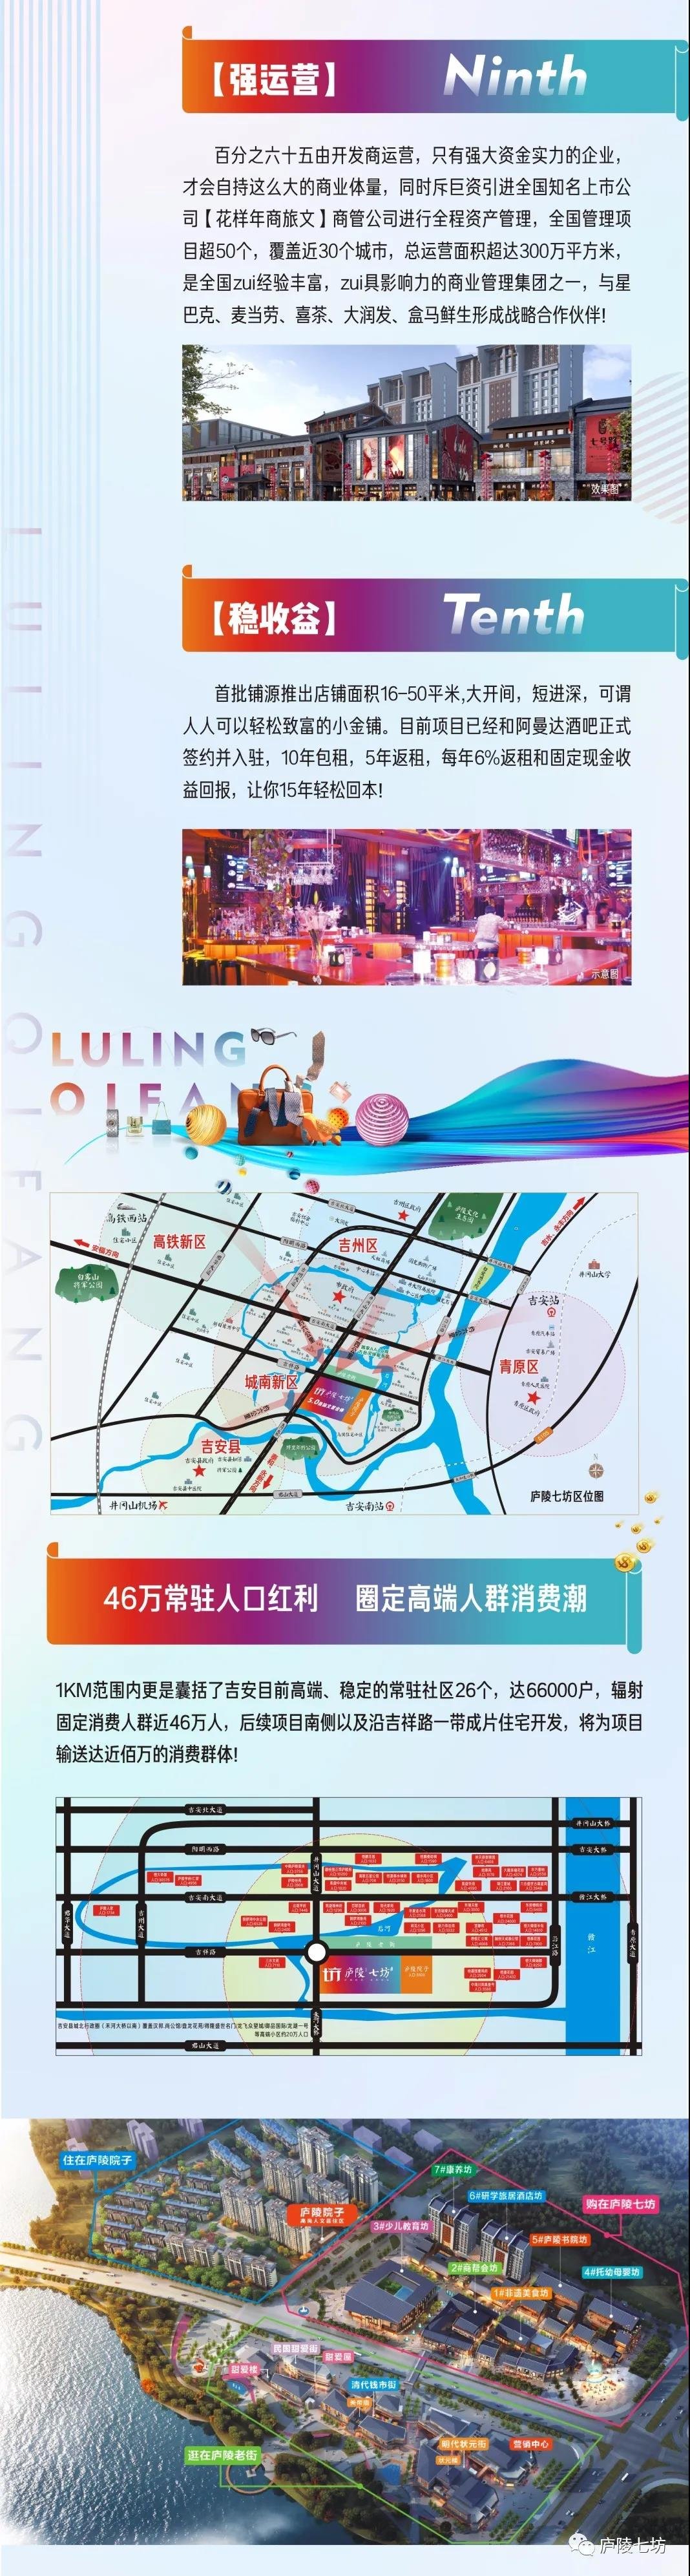 【喜讯】吉安榜上有名！祝贺庐陵人文谷被评定为省级旅游休闲街区！